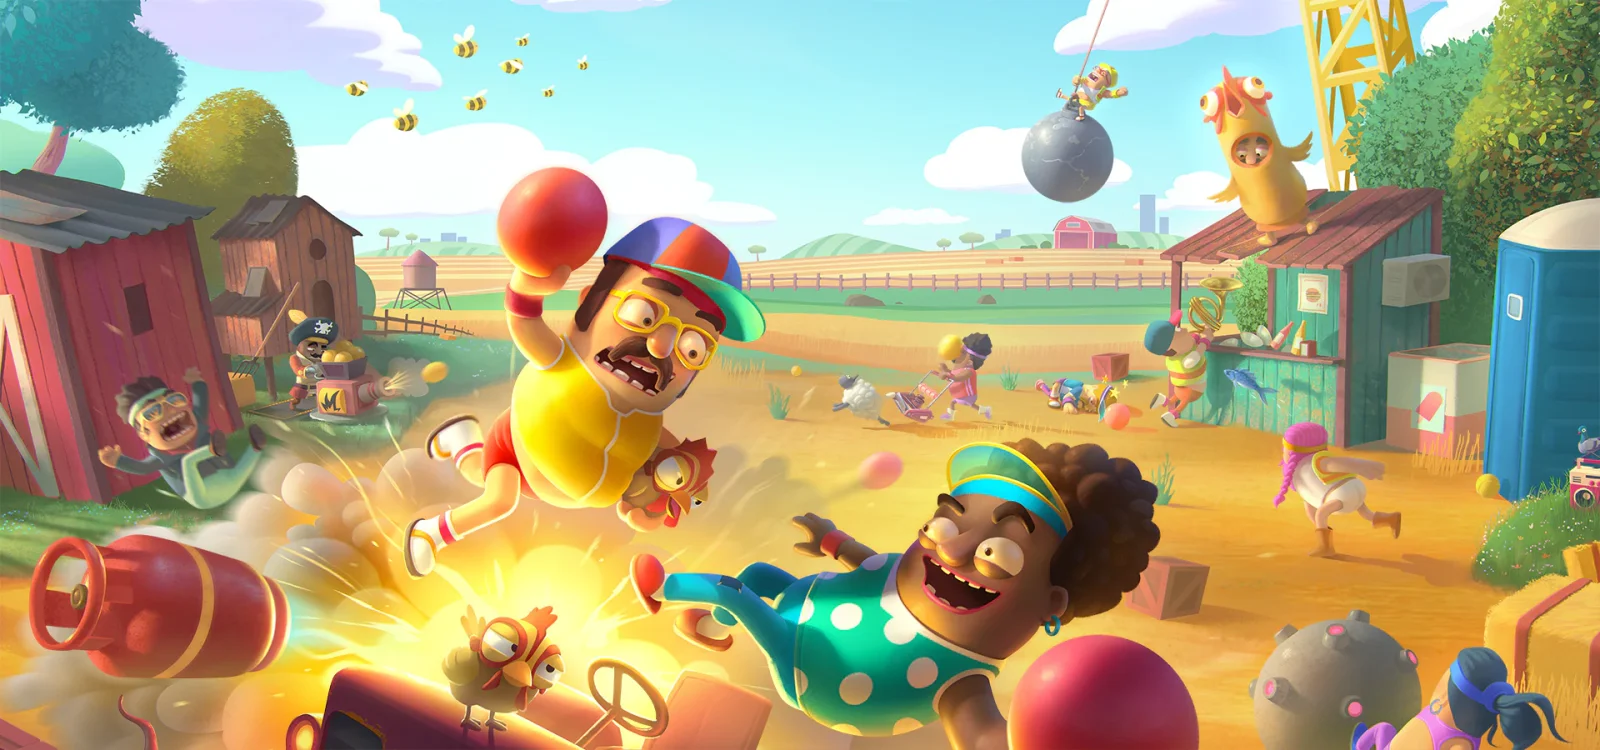 育碧宣布欢乐派对游戏《神奇躲避球》将于2023年1月26日发售